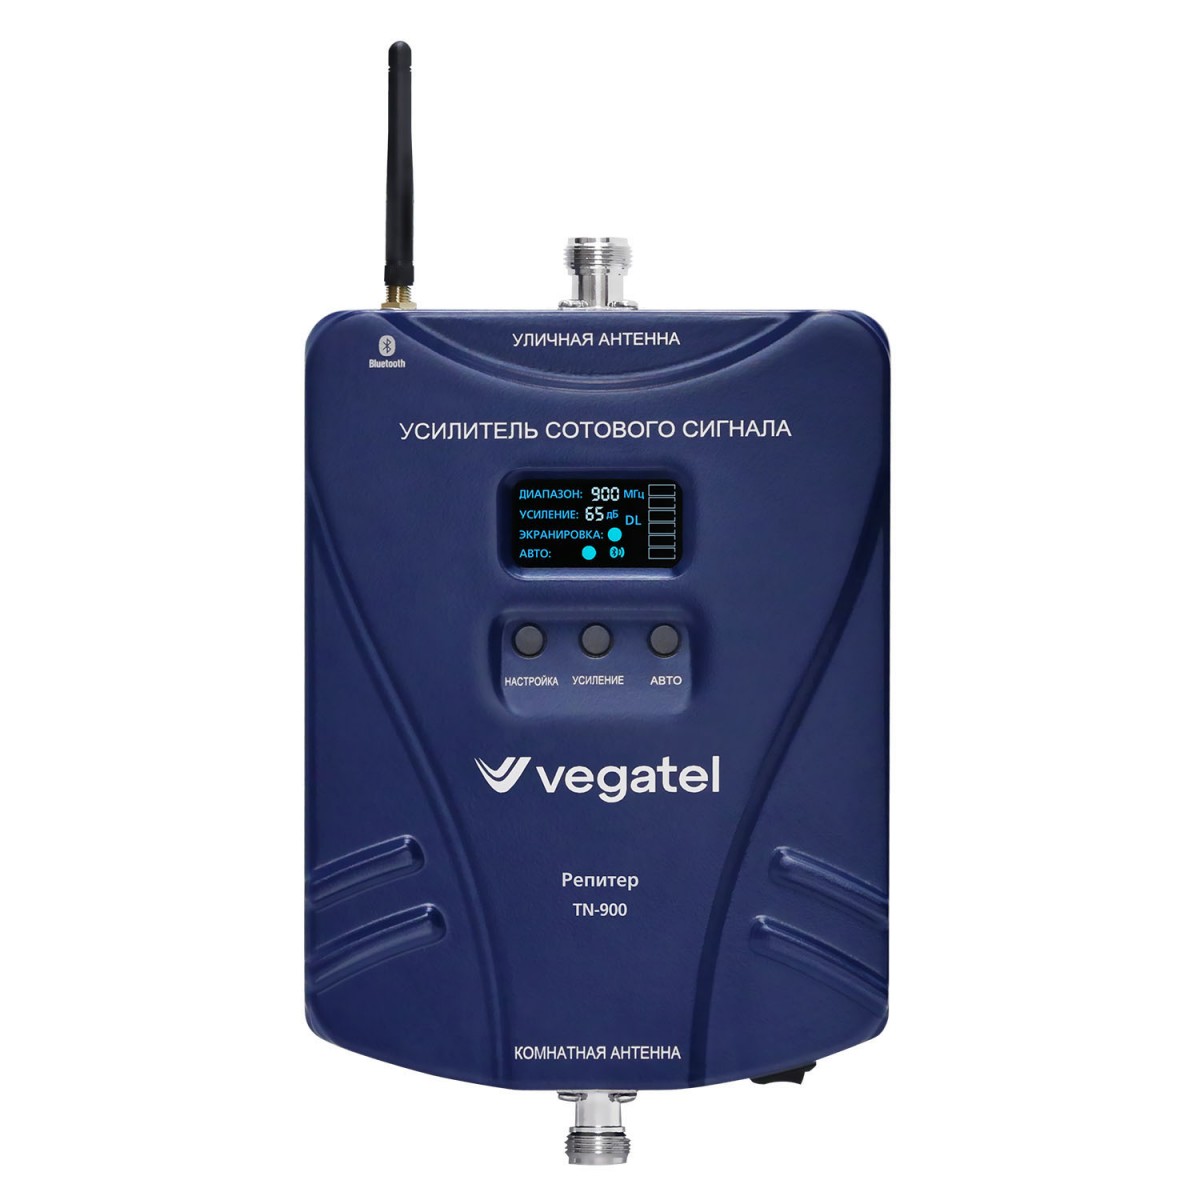 Детальное изображение товара "Комплект усиления сотовой связи Vegatel TN-900" из каталога оборудования Антенна76